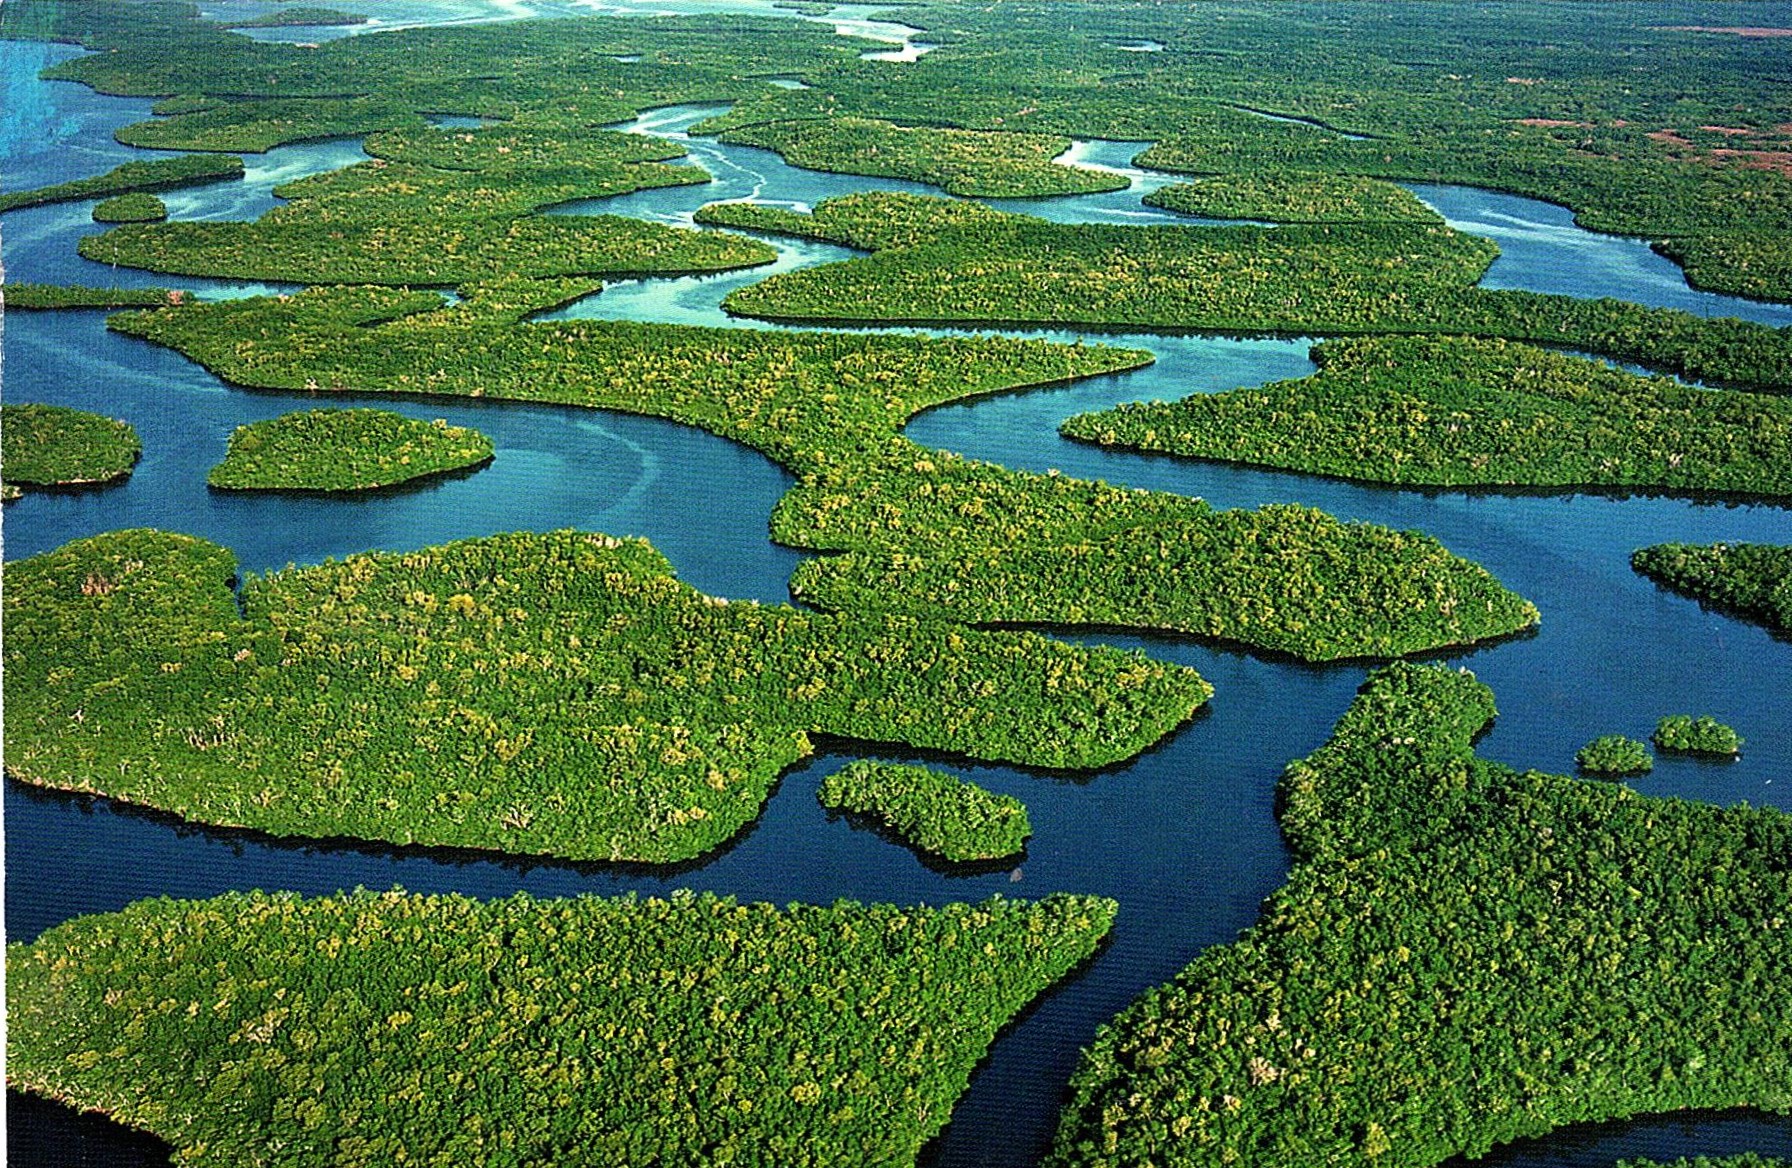 Амазонка полноводна круглый год. Река Амазонка в Бразилии. Амазонка самая длинная река в мире. Бассейн реки Амазонка. Исток реки Амазонка.